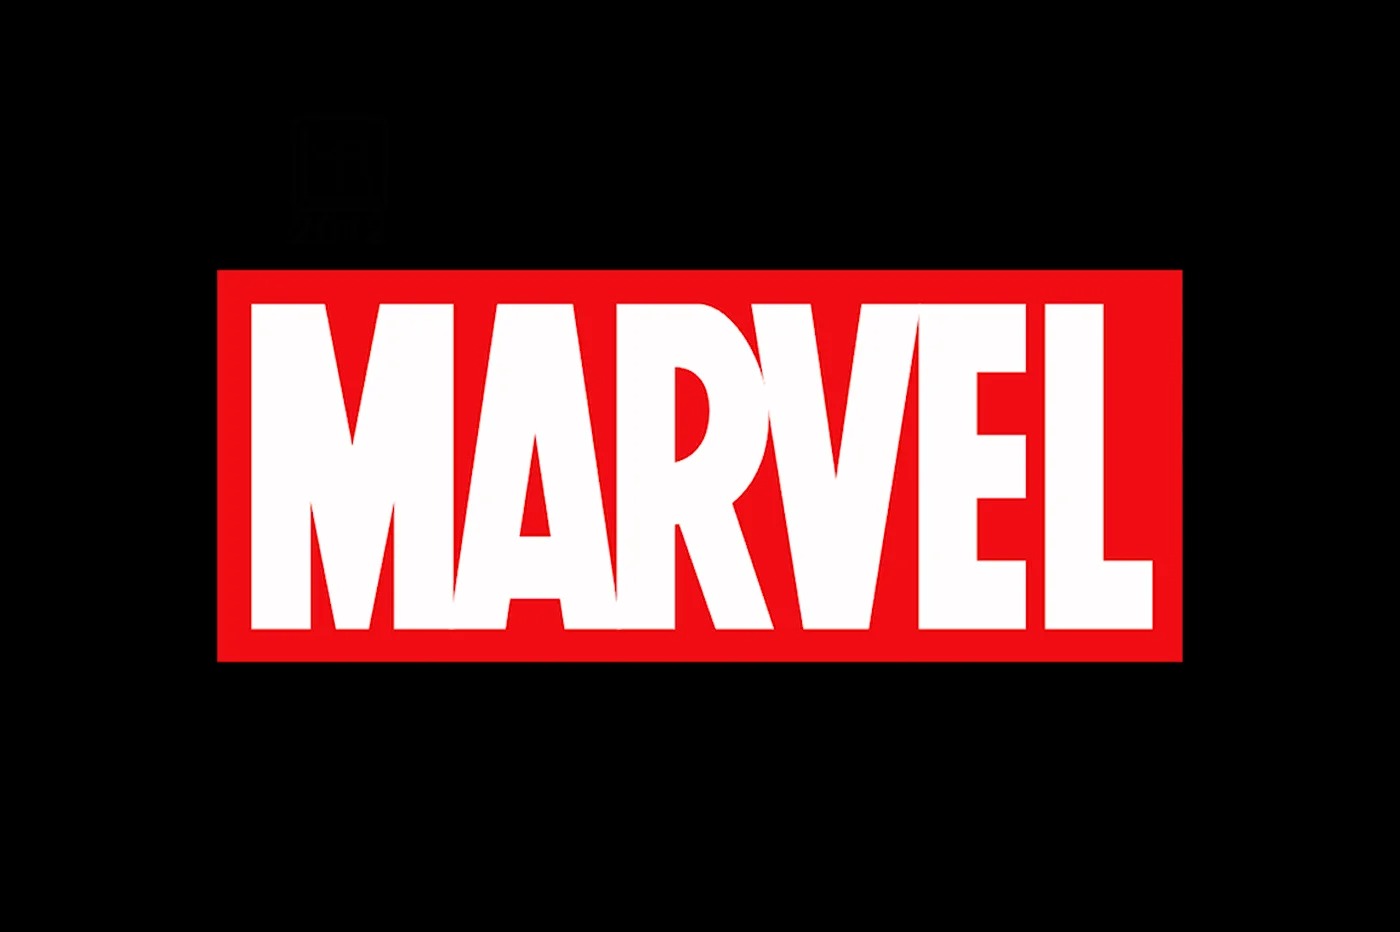 Marvel : une belle surprise gratuite pour les fans, vous allez adorer